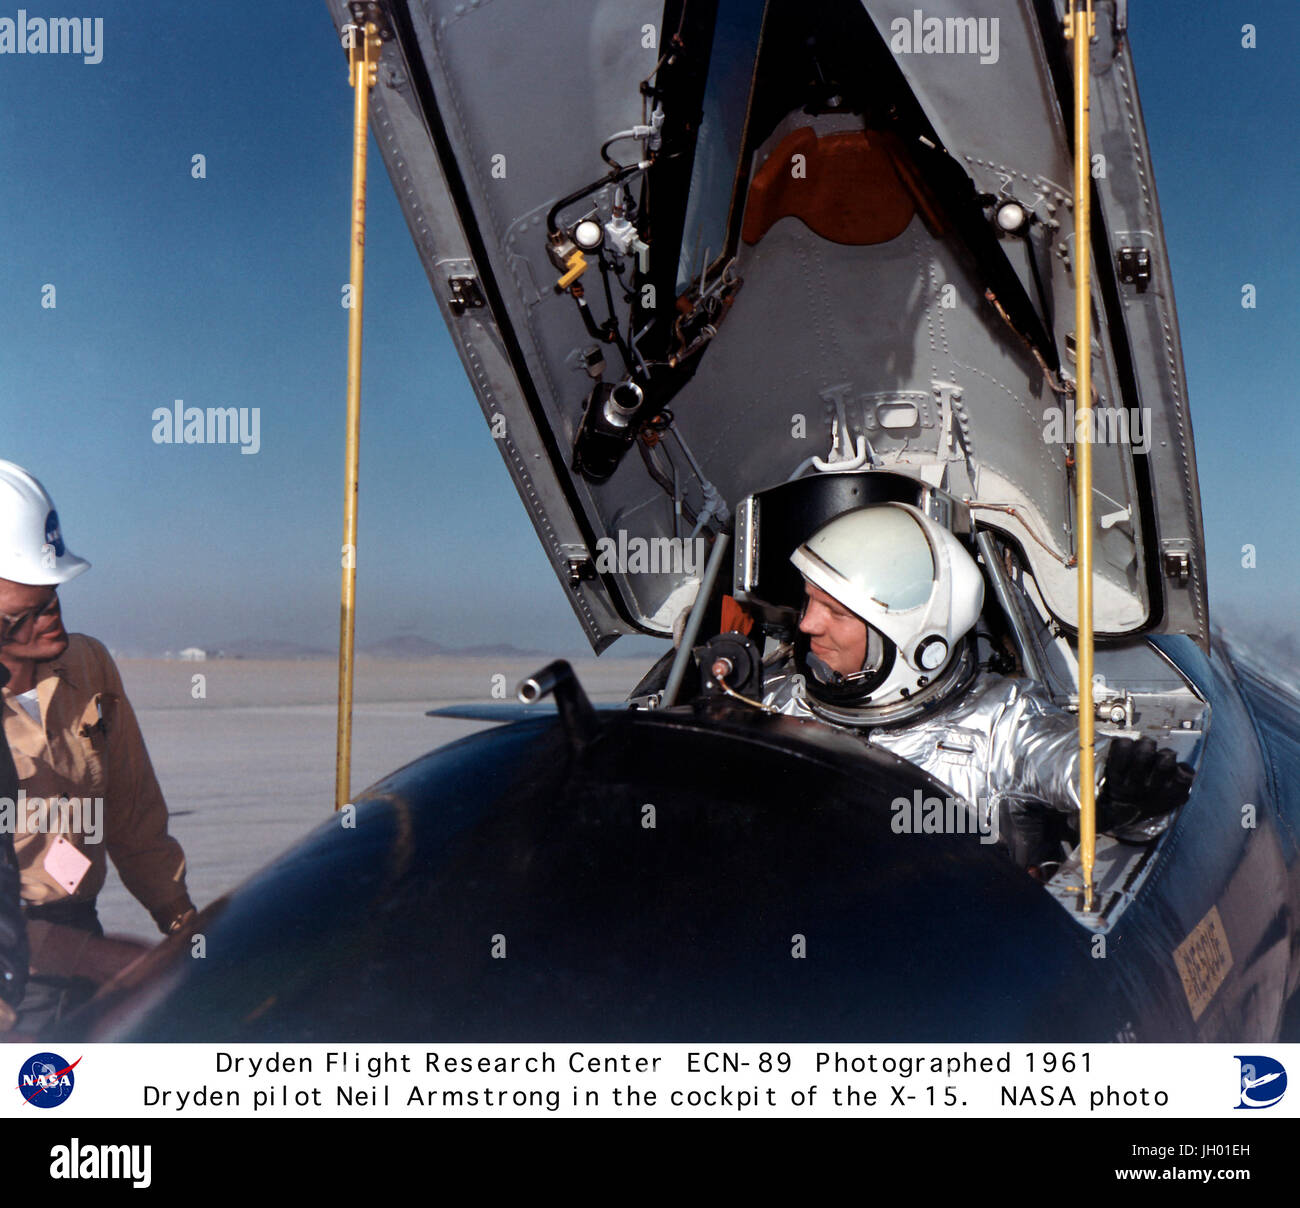 Pilota della NASA Neil Armstrong è visto qui nel pozzetto dell'X-15 nave #1 (56-6670) dopo un volo di ricerca.A U.S. Pilota della marina militare durante la Guerra di Corea che ha volato 78 missioni di combattimento in F9F-2 caccia e che si è aggiudicato la medaglia d'aria e due stelle dorate, Armstrong si è laureato da Purdue University nel 1955 con una laurea in ingegneria aeronautica. Nello stesso anno è entrato a far parte del comitato consultivo nazionale per l'aeronautica" Lewis volo laboratorio di propulsione in Cleveland, Ohio (oggi la NASA Glenn Research Center).Nel luglio 1955, Armstrong trasferito al volo ad alta velocità ferroviaria (HSFS, COME D Foto Stock